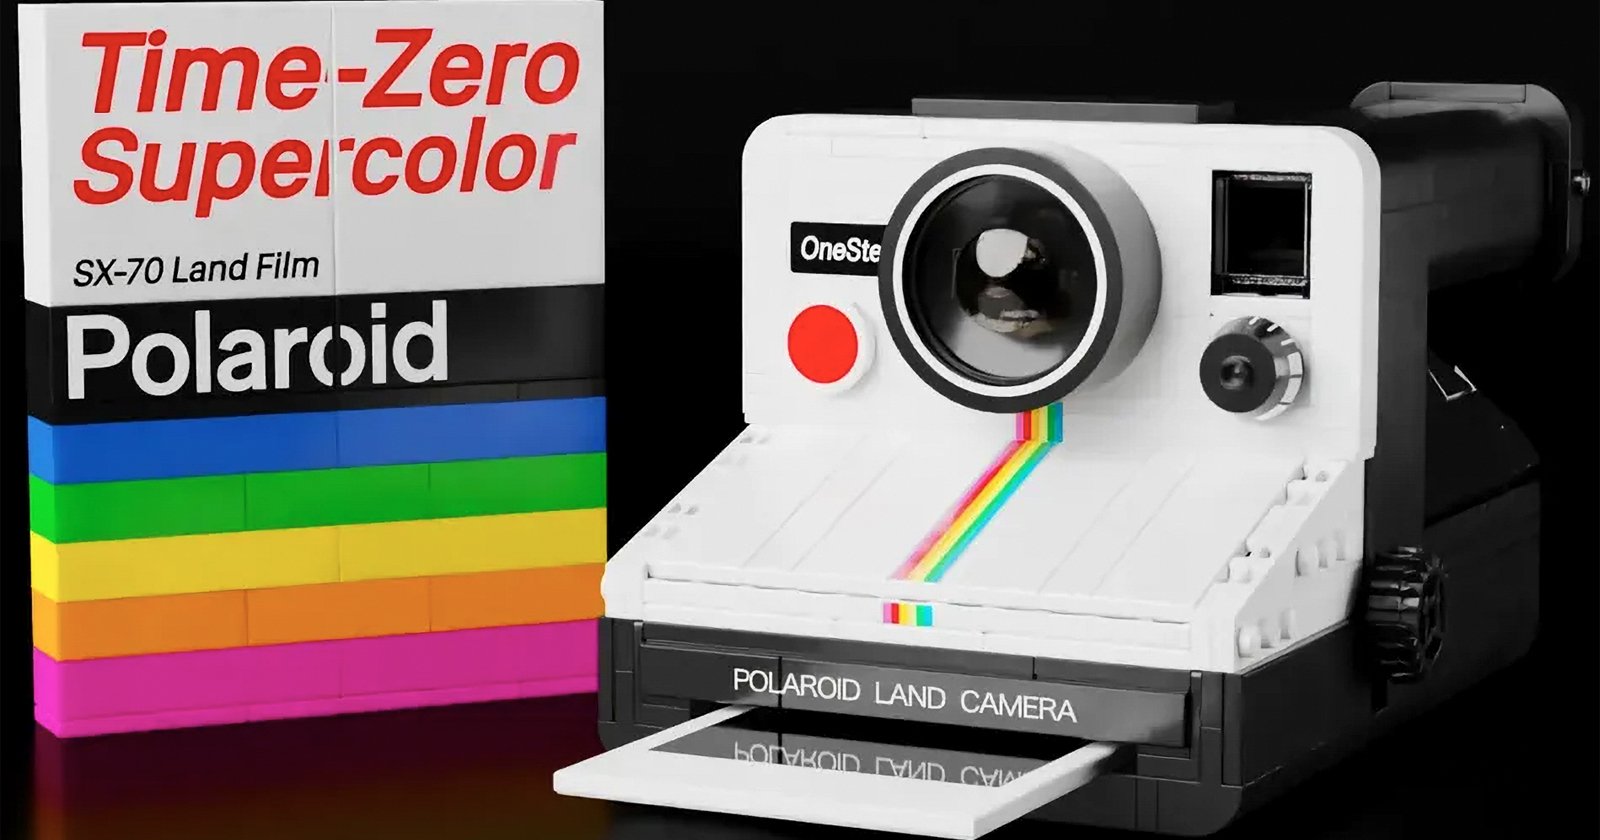 How do I insert Polaroid film into the camera? – Polaroid Support